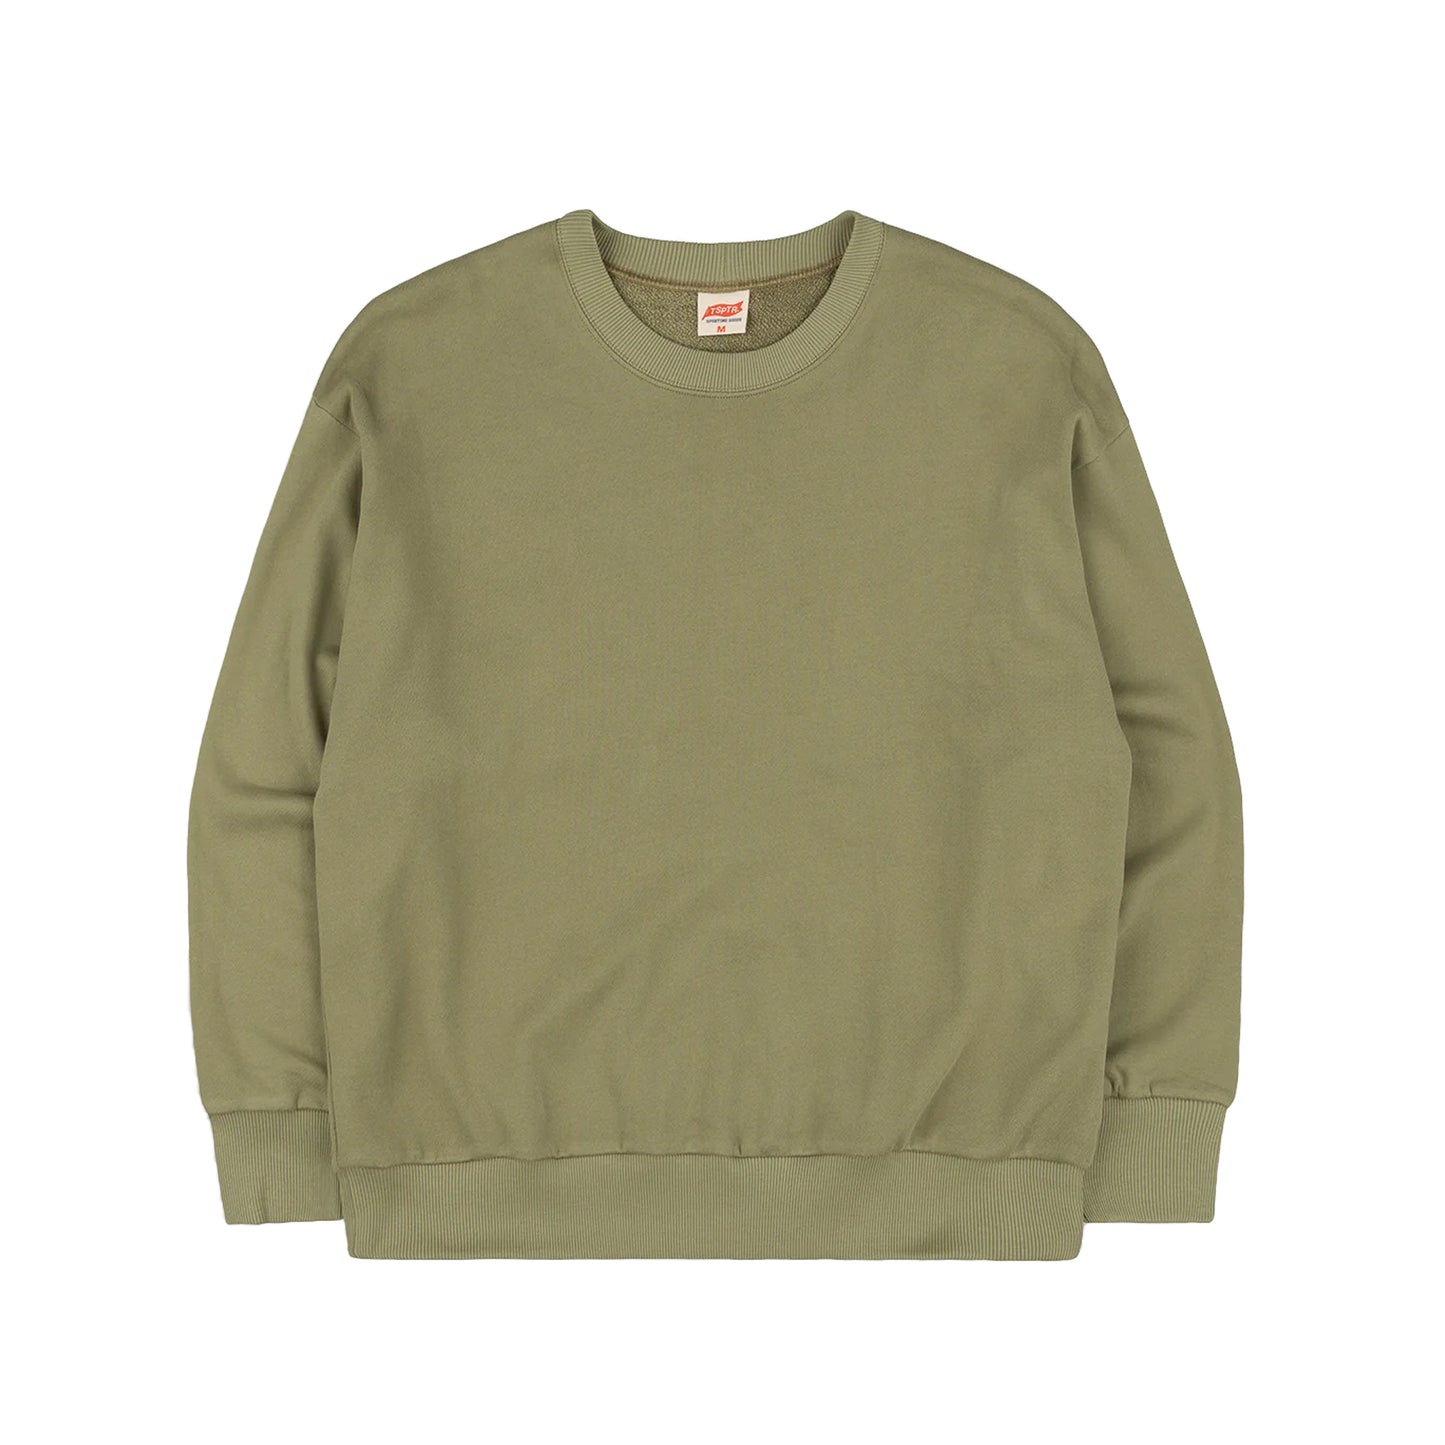 TSPTR Cadet Sweatshirt - Olive - SALE 35% OFF